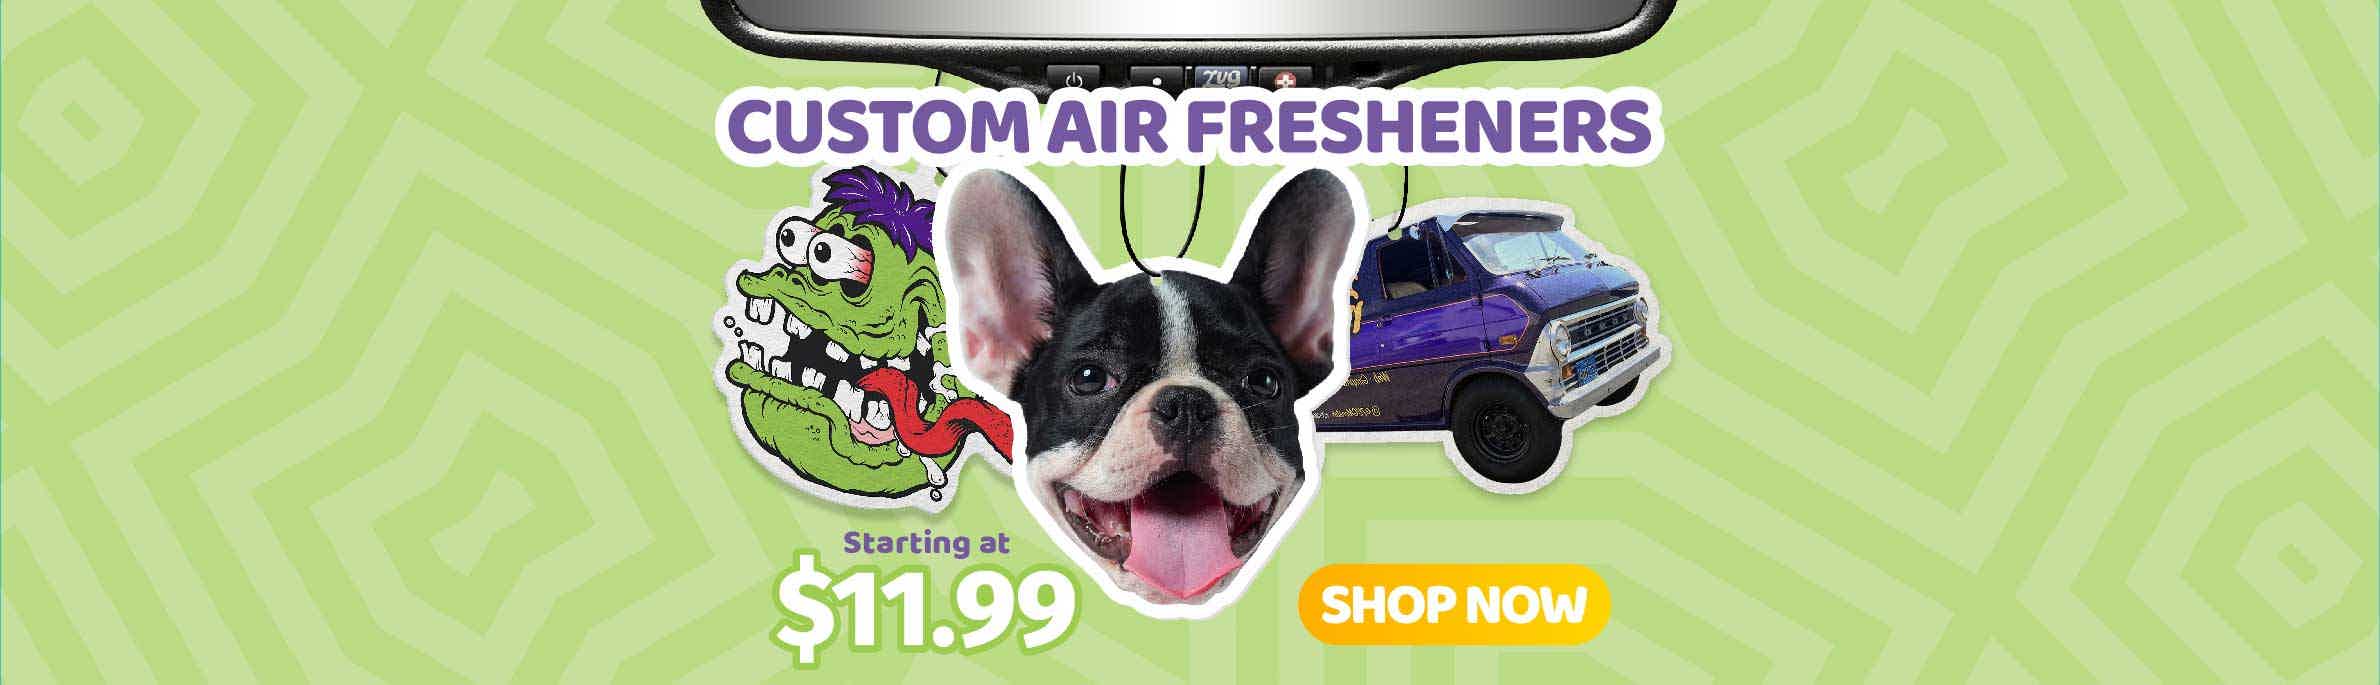 Custom Air Fresheners